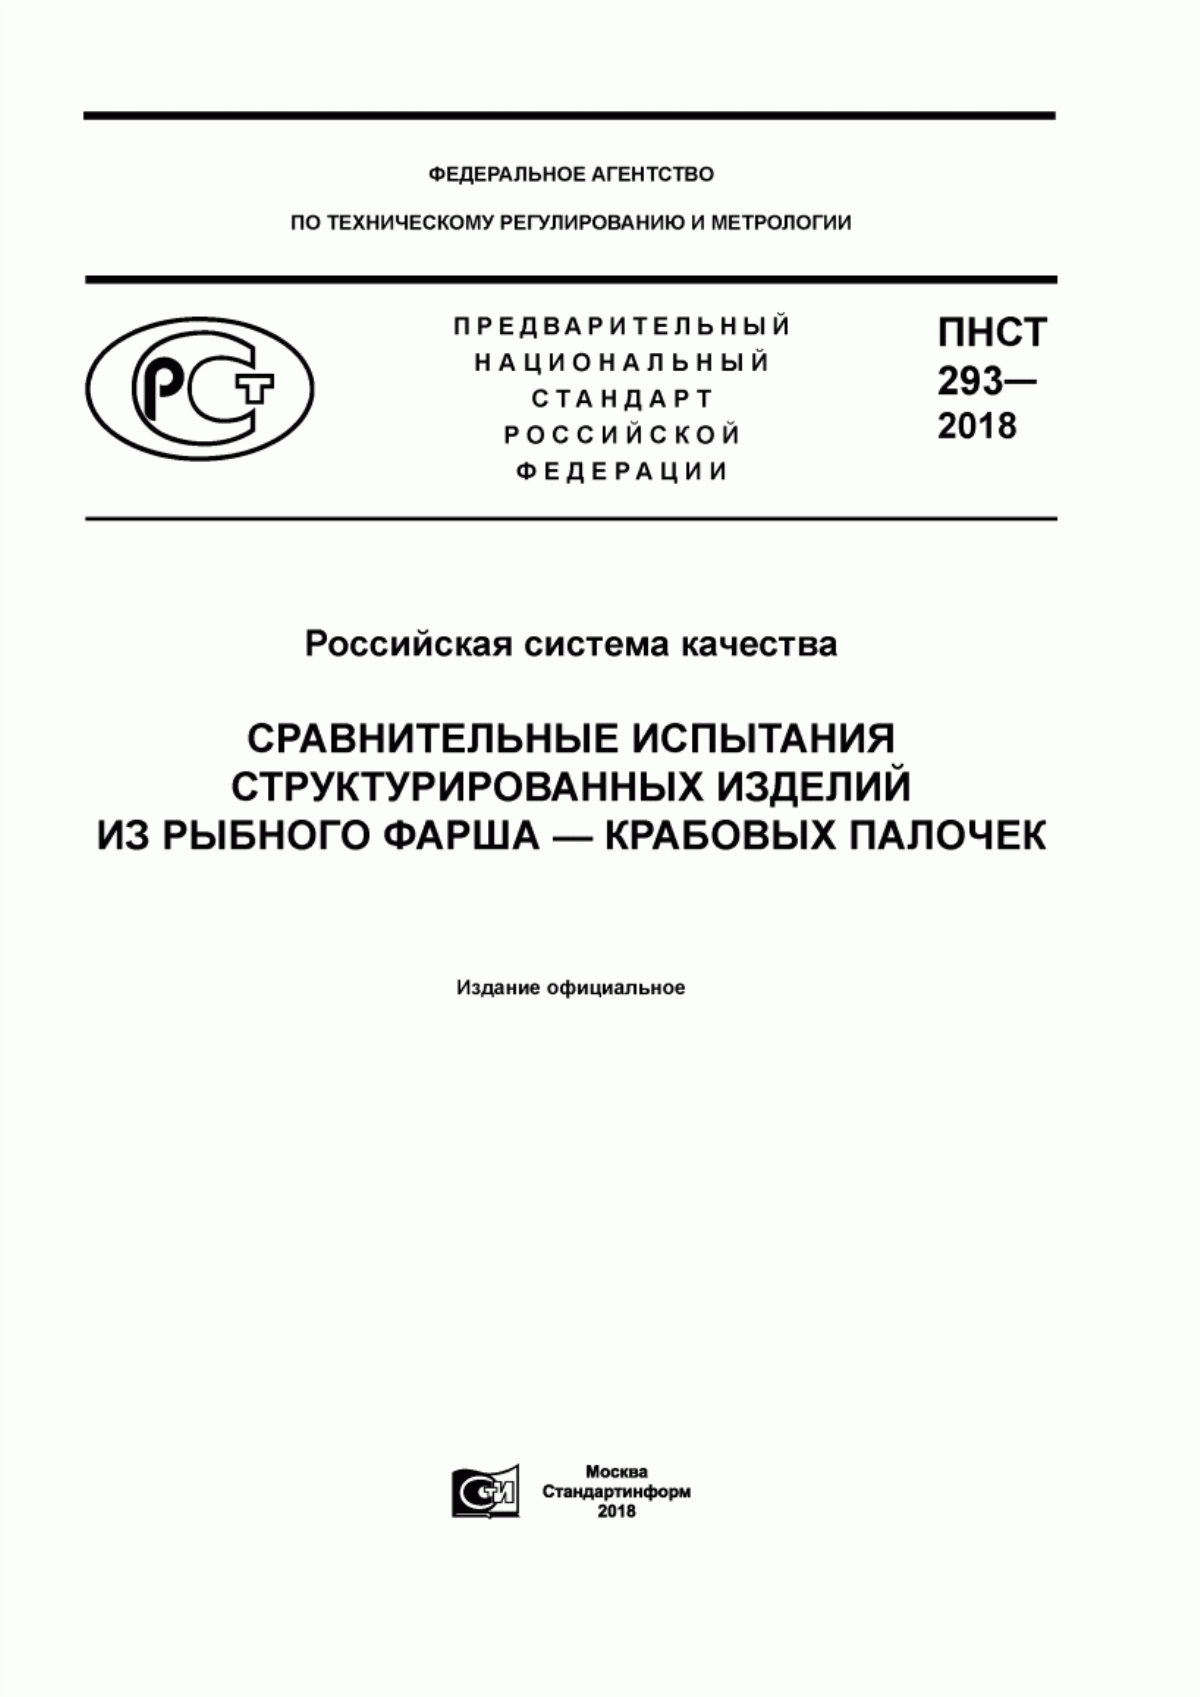 ПНСТ 293-2018 Российская система качества. Сравнительные испытания структурированных изделий из рыбного фарша - крабовых палочек